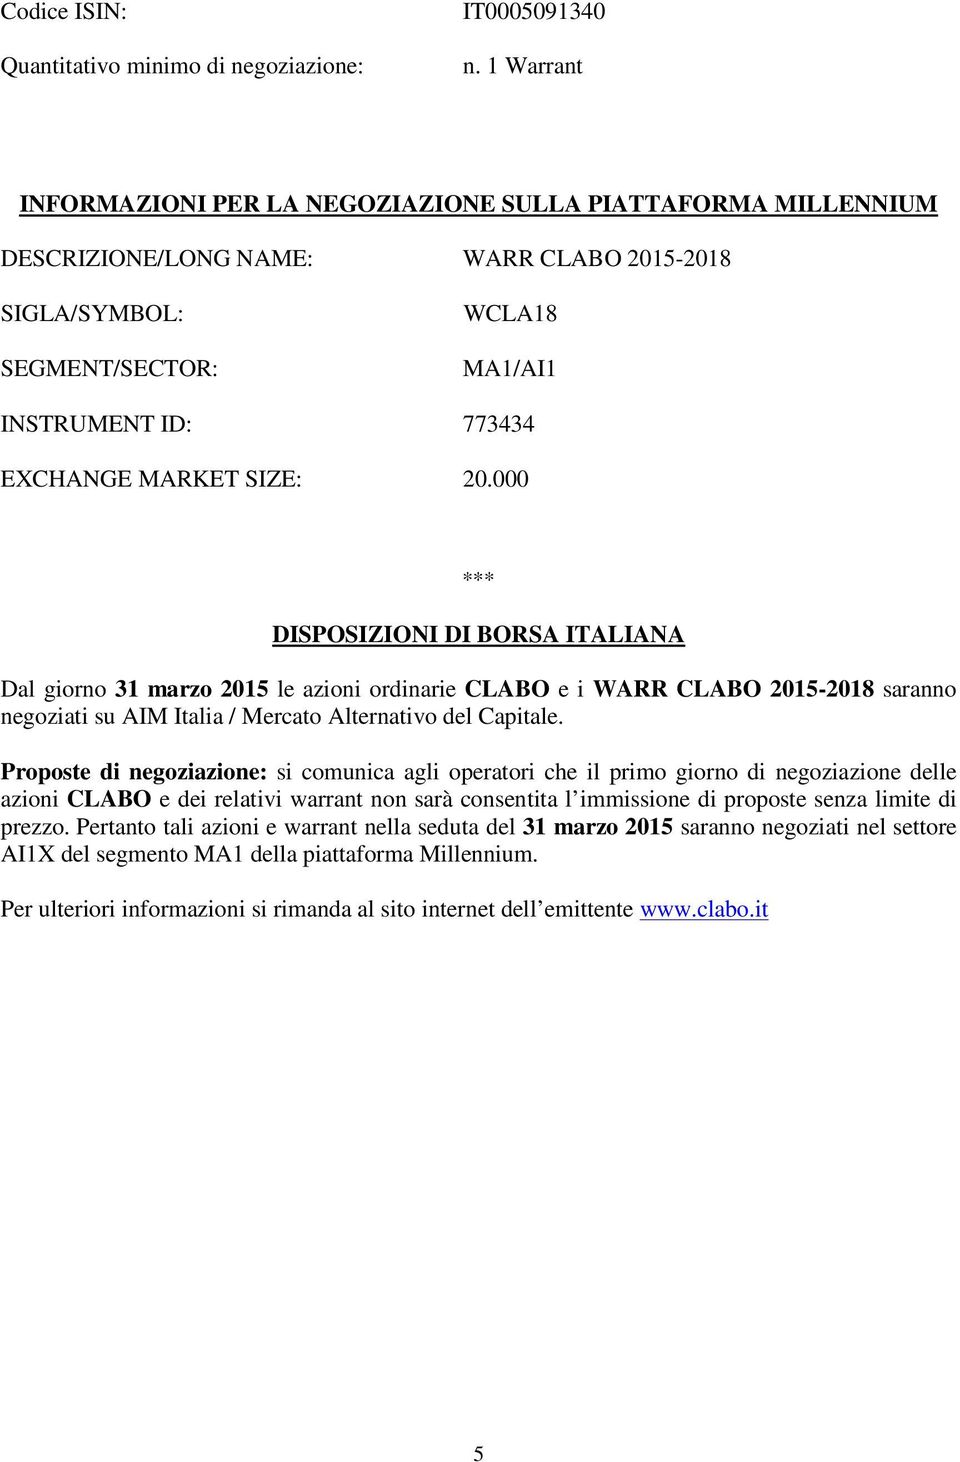 SIZE: 20.000 *** DISPOSIZIONI DI BORSA ITALIANA Dal giorno 31 marzo 2015 le azioni ordinarie CLABO e i WARR CLABO 2015-2018 saranno negoziati su AIM Italia / Mercato Alternativo del Capitale.